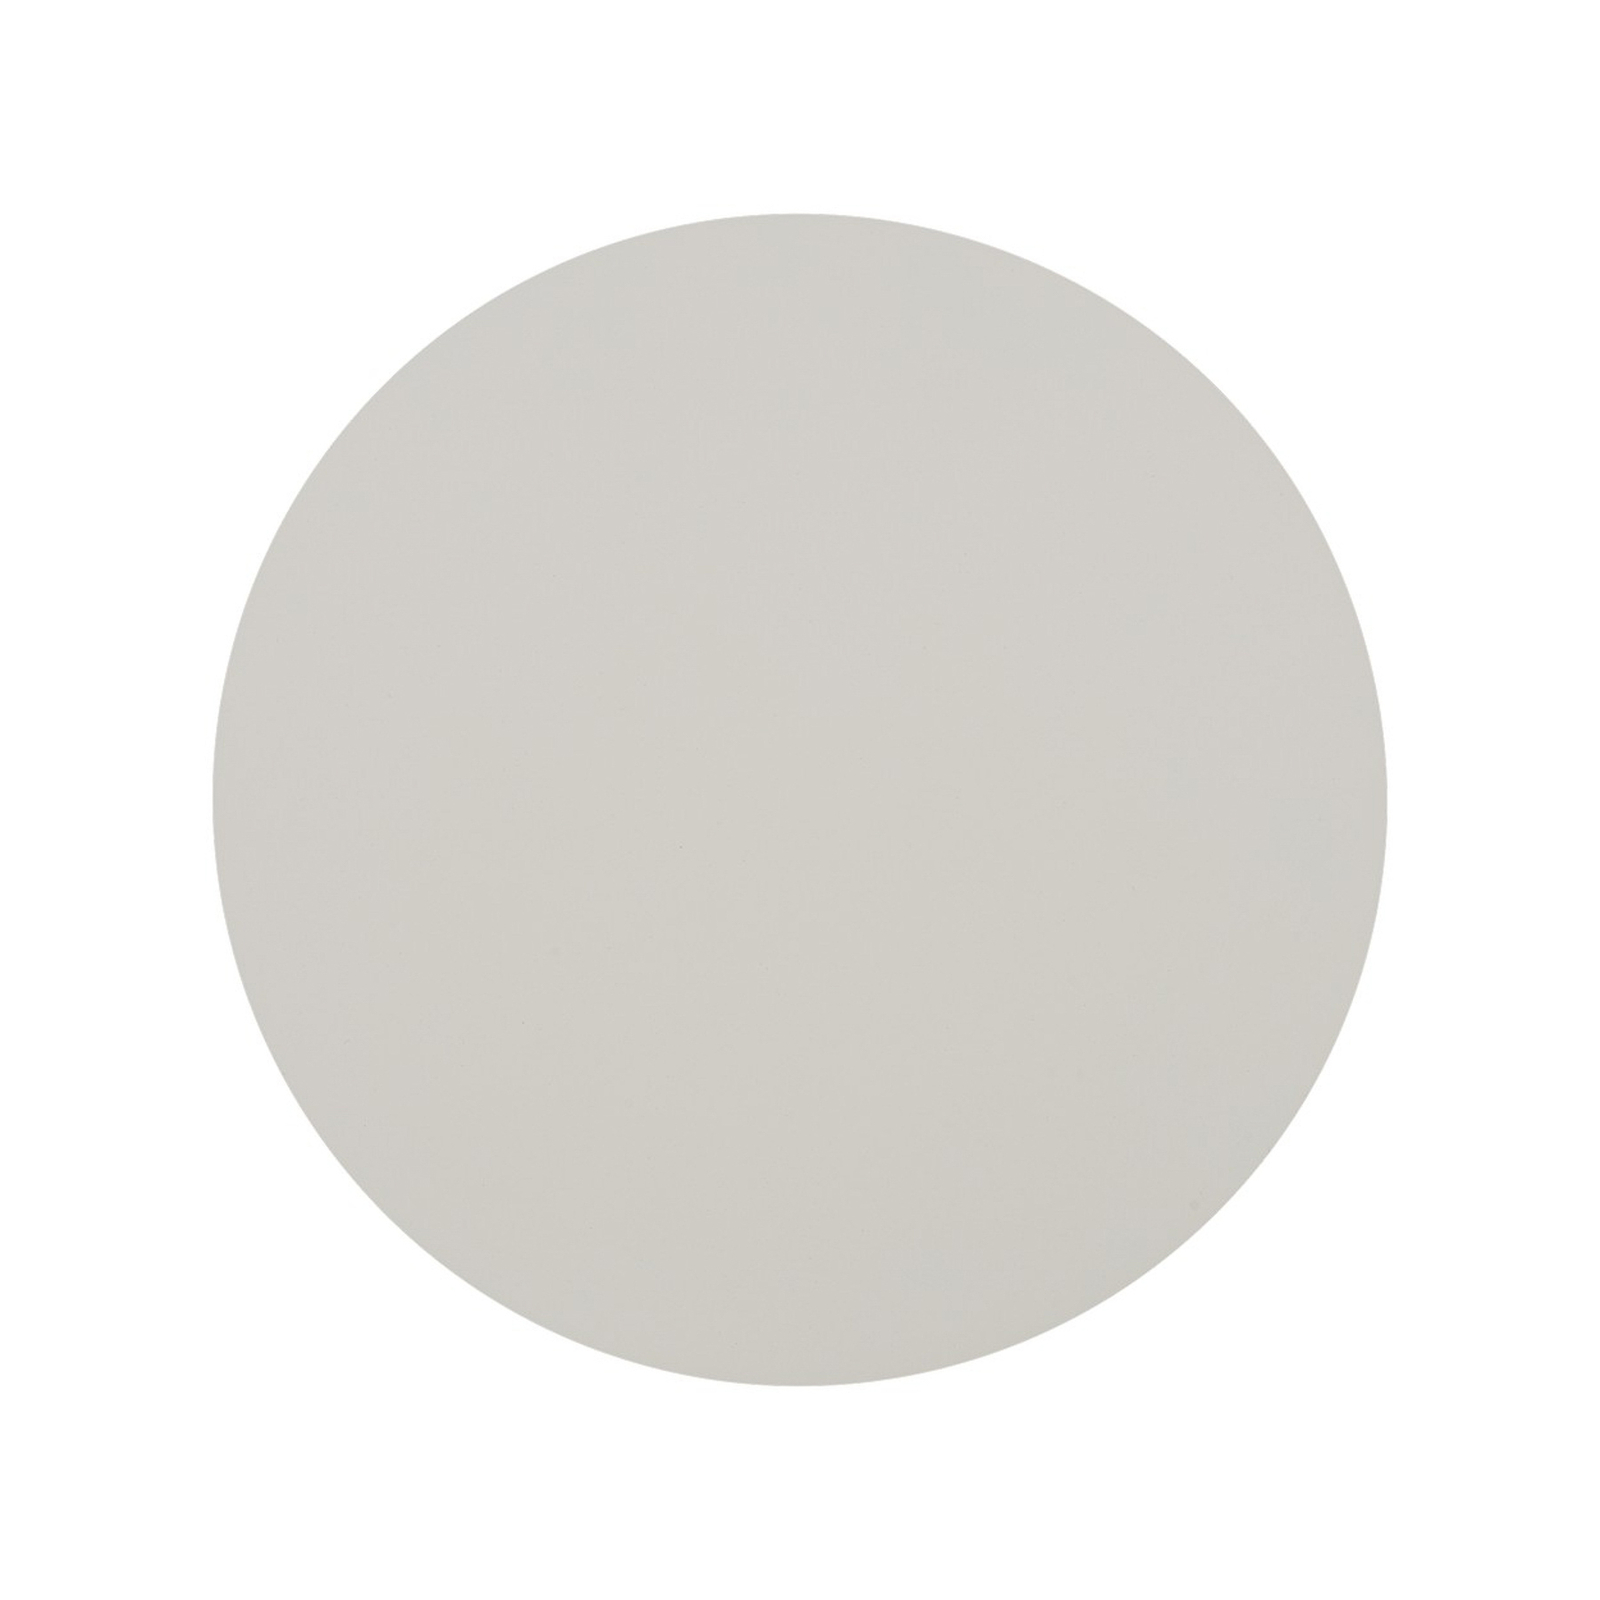 Wandlamp Luna, beige, indirect licht, Ø 30 cm, staal